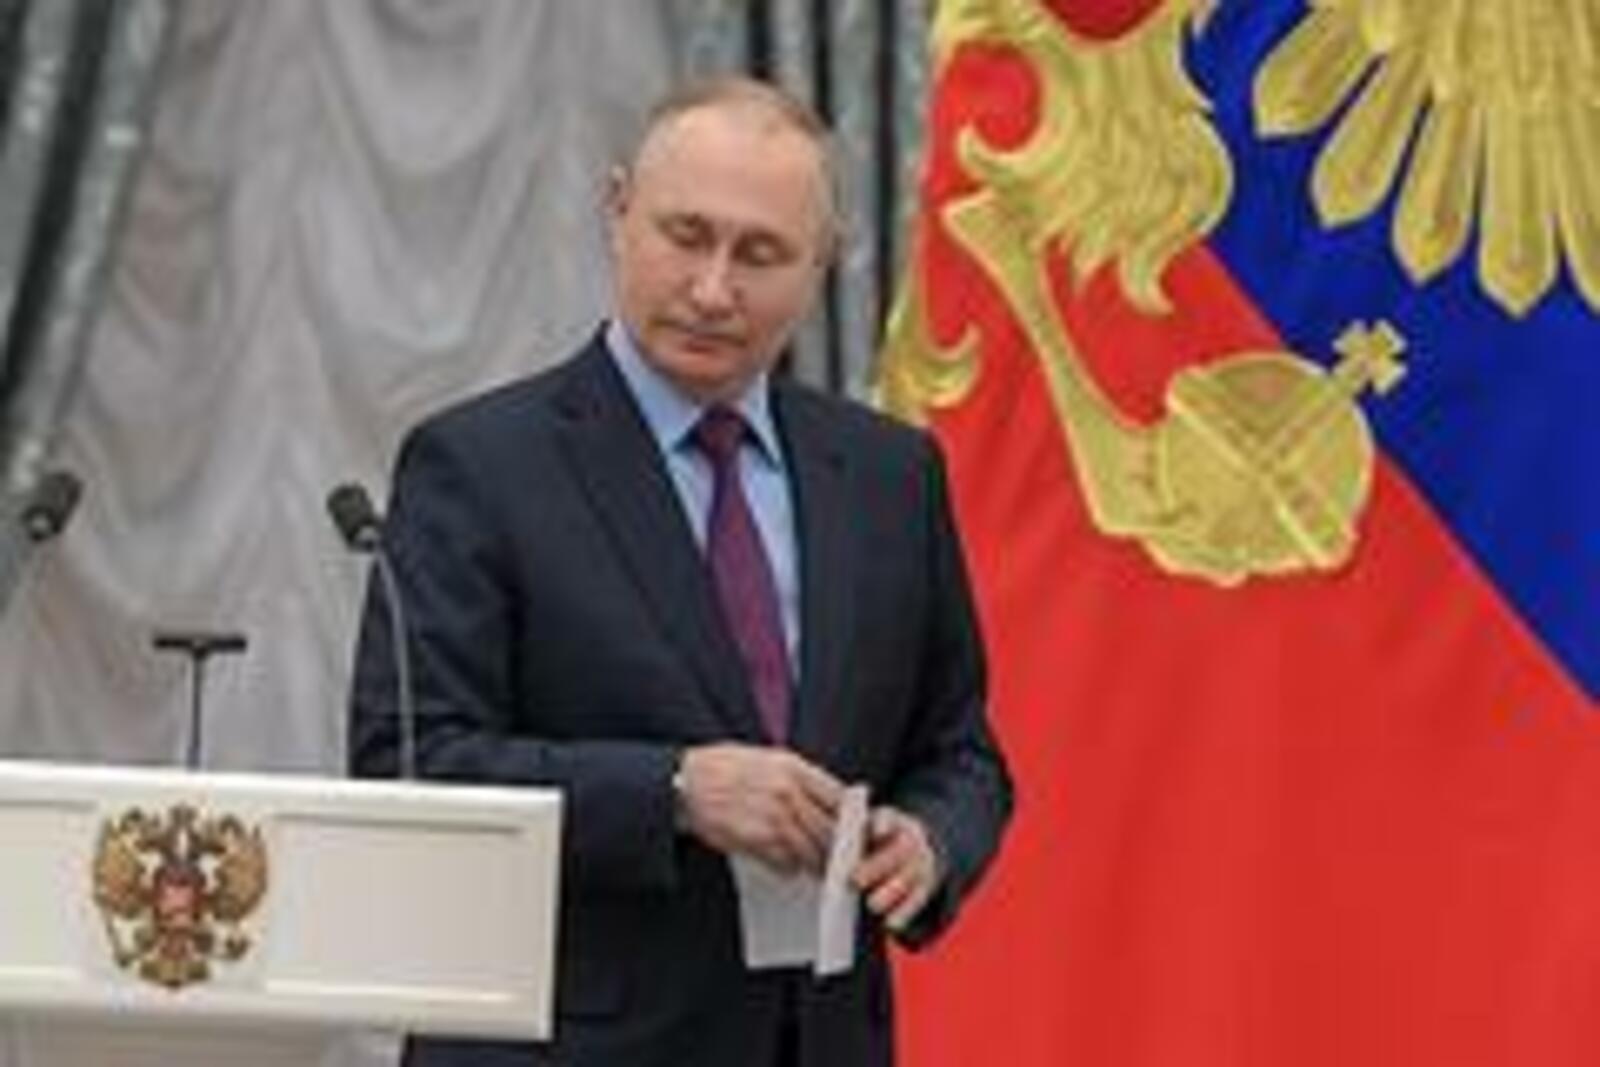 Путин назвал нелегитимными западные санкции